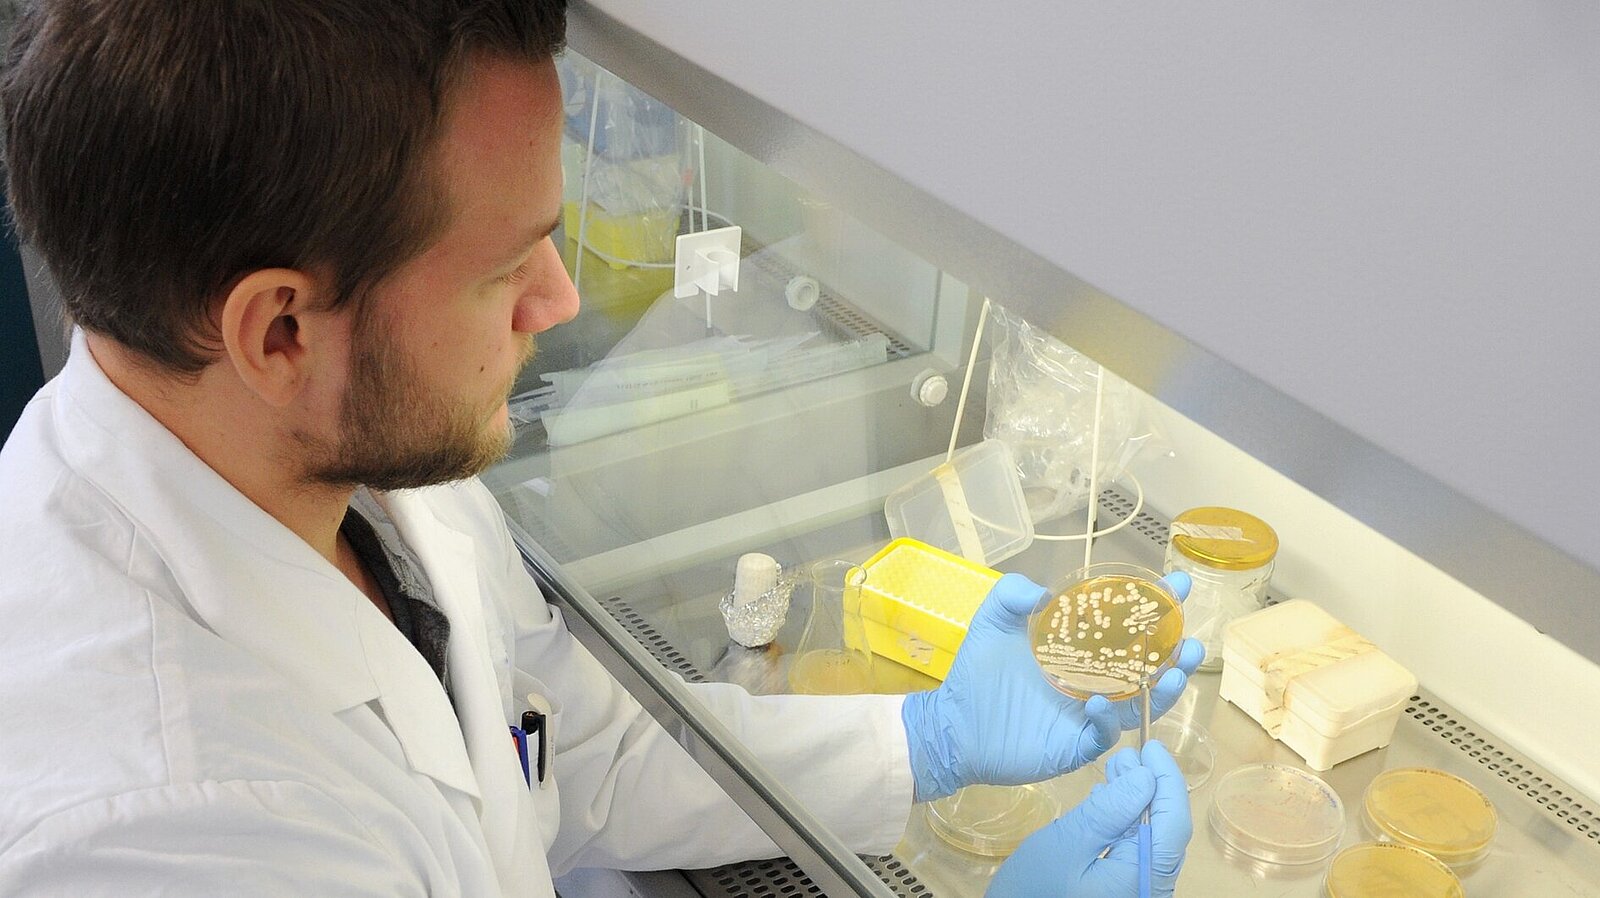 Ein Mann im weißen Kittel untersucht den Inhalt einer Petrischale.